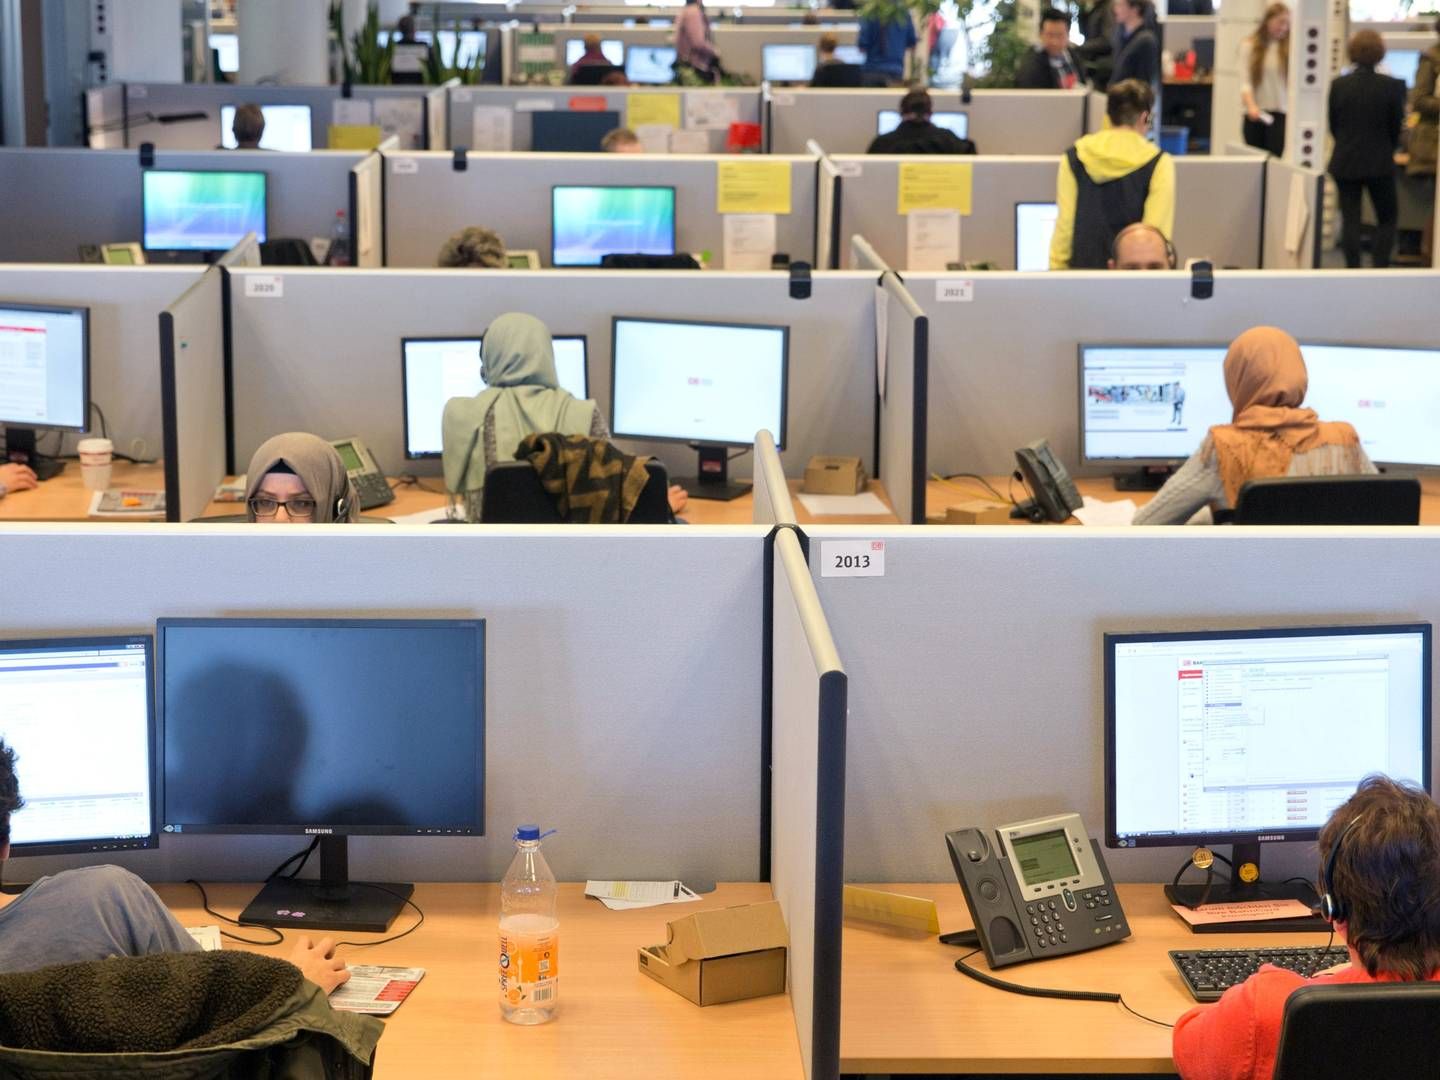 Mødebookere, der arbejder i et callcenter er et vigtigt element i pensionsmæglervirksomheden APC' forretningskoncept. Arkivfoto: Jörg Carstensen/AP/Ritzau Scanpix | Photo: Jörg Carstensen/AP/Ritzau Scanpix